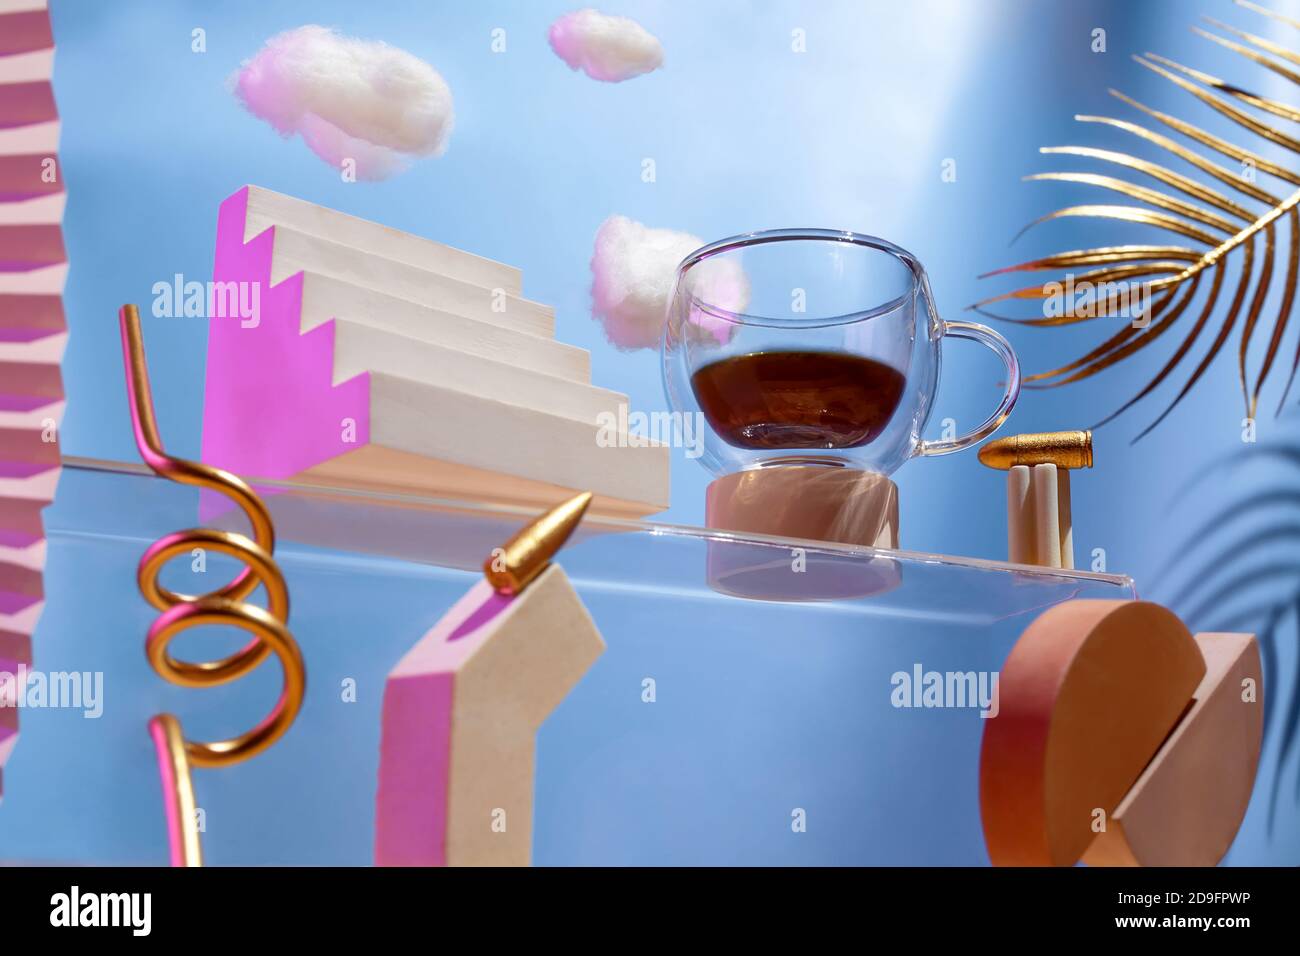 Composizione futuristica sul tema del caffè, varie figure, proiettili, nuvole sulle scale su sfondo blu, il concetto di carica energetica Foto Stock